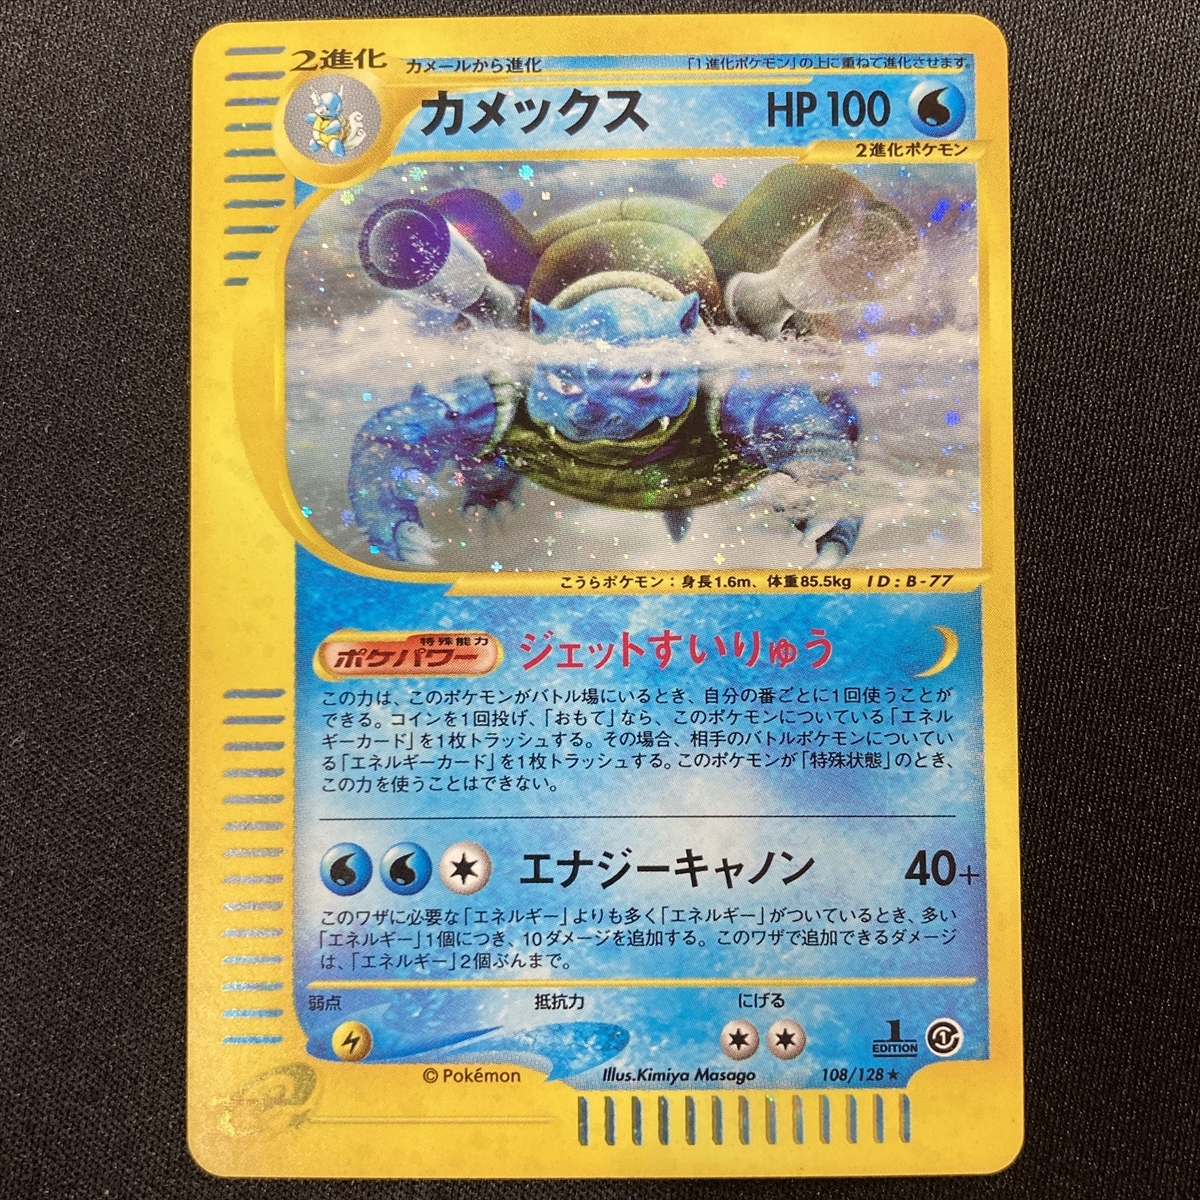 Blastoise No 108 128 Pokemon Card 1st Edition Expedition E Series Holo Japanese カメックス Eカード クリスタル ポケモン カード ポケモンカードゲーム 売買されたオークション情報 Yahooの商品情報をアーカイブ公開 オークファン Aucfan Com